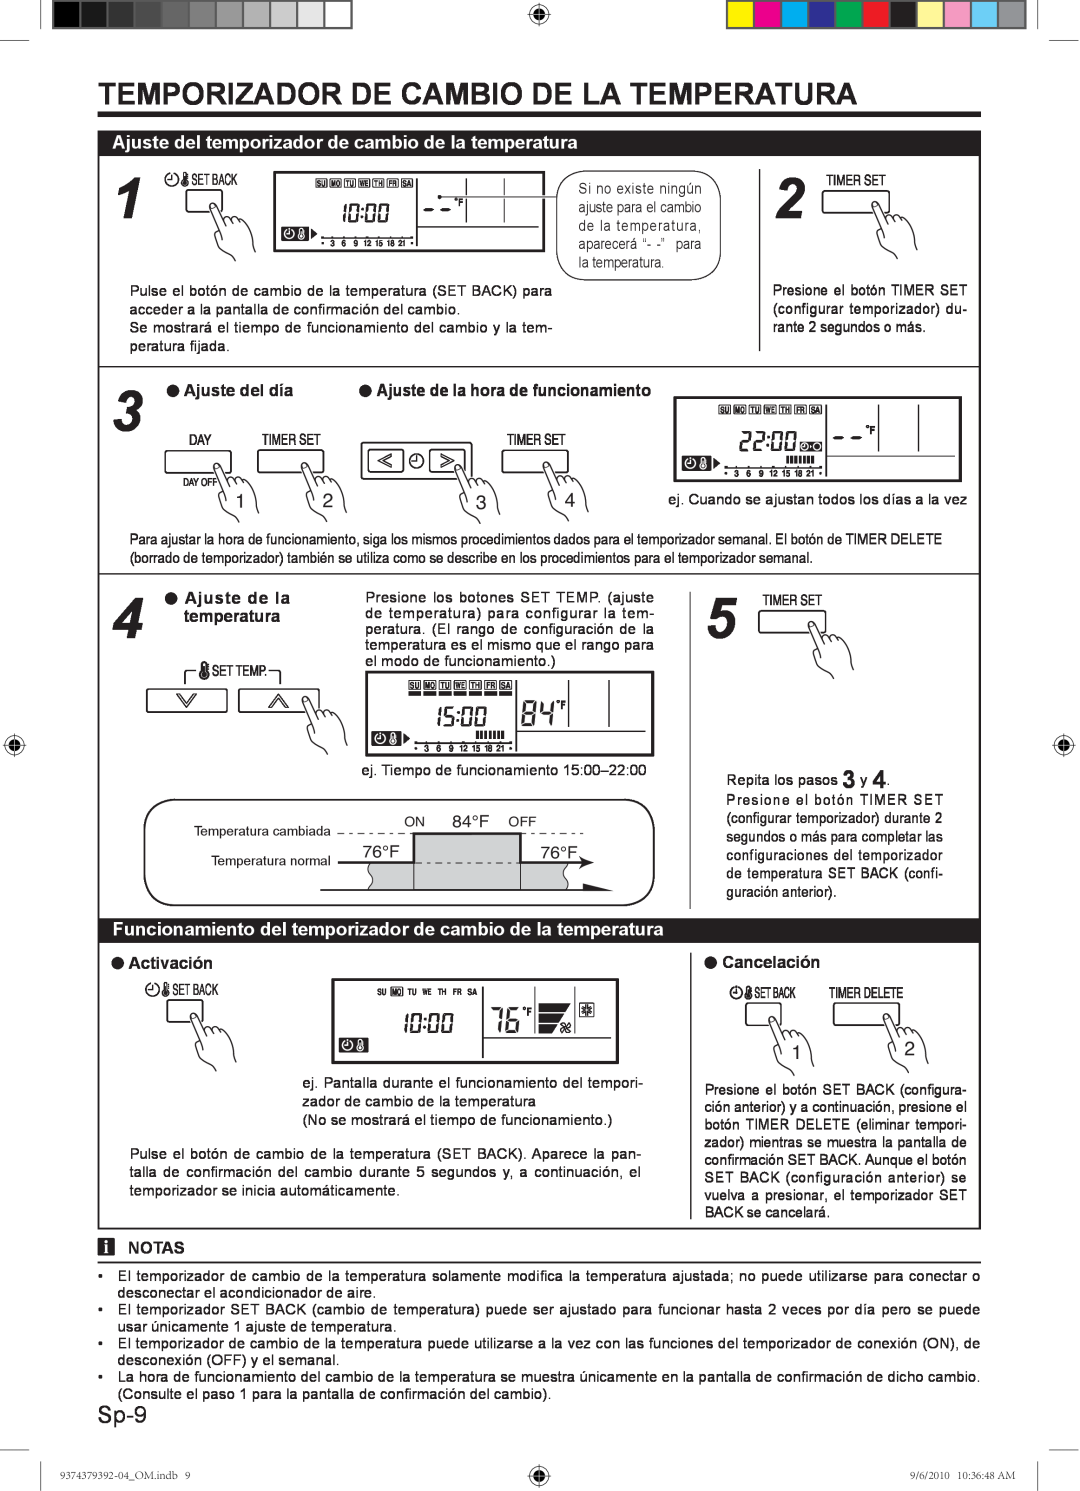 Fujitsu Halcyon Air Conditioner, 9374379392-04 manual Temporizador De Cambio De La Temperatura, Sp-9 